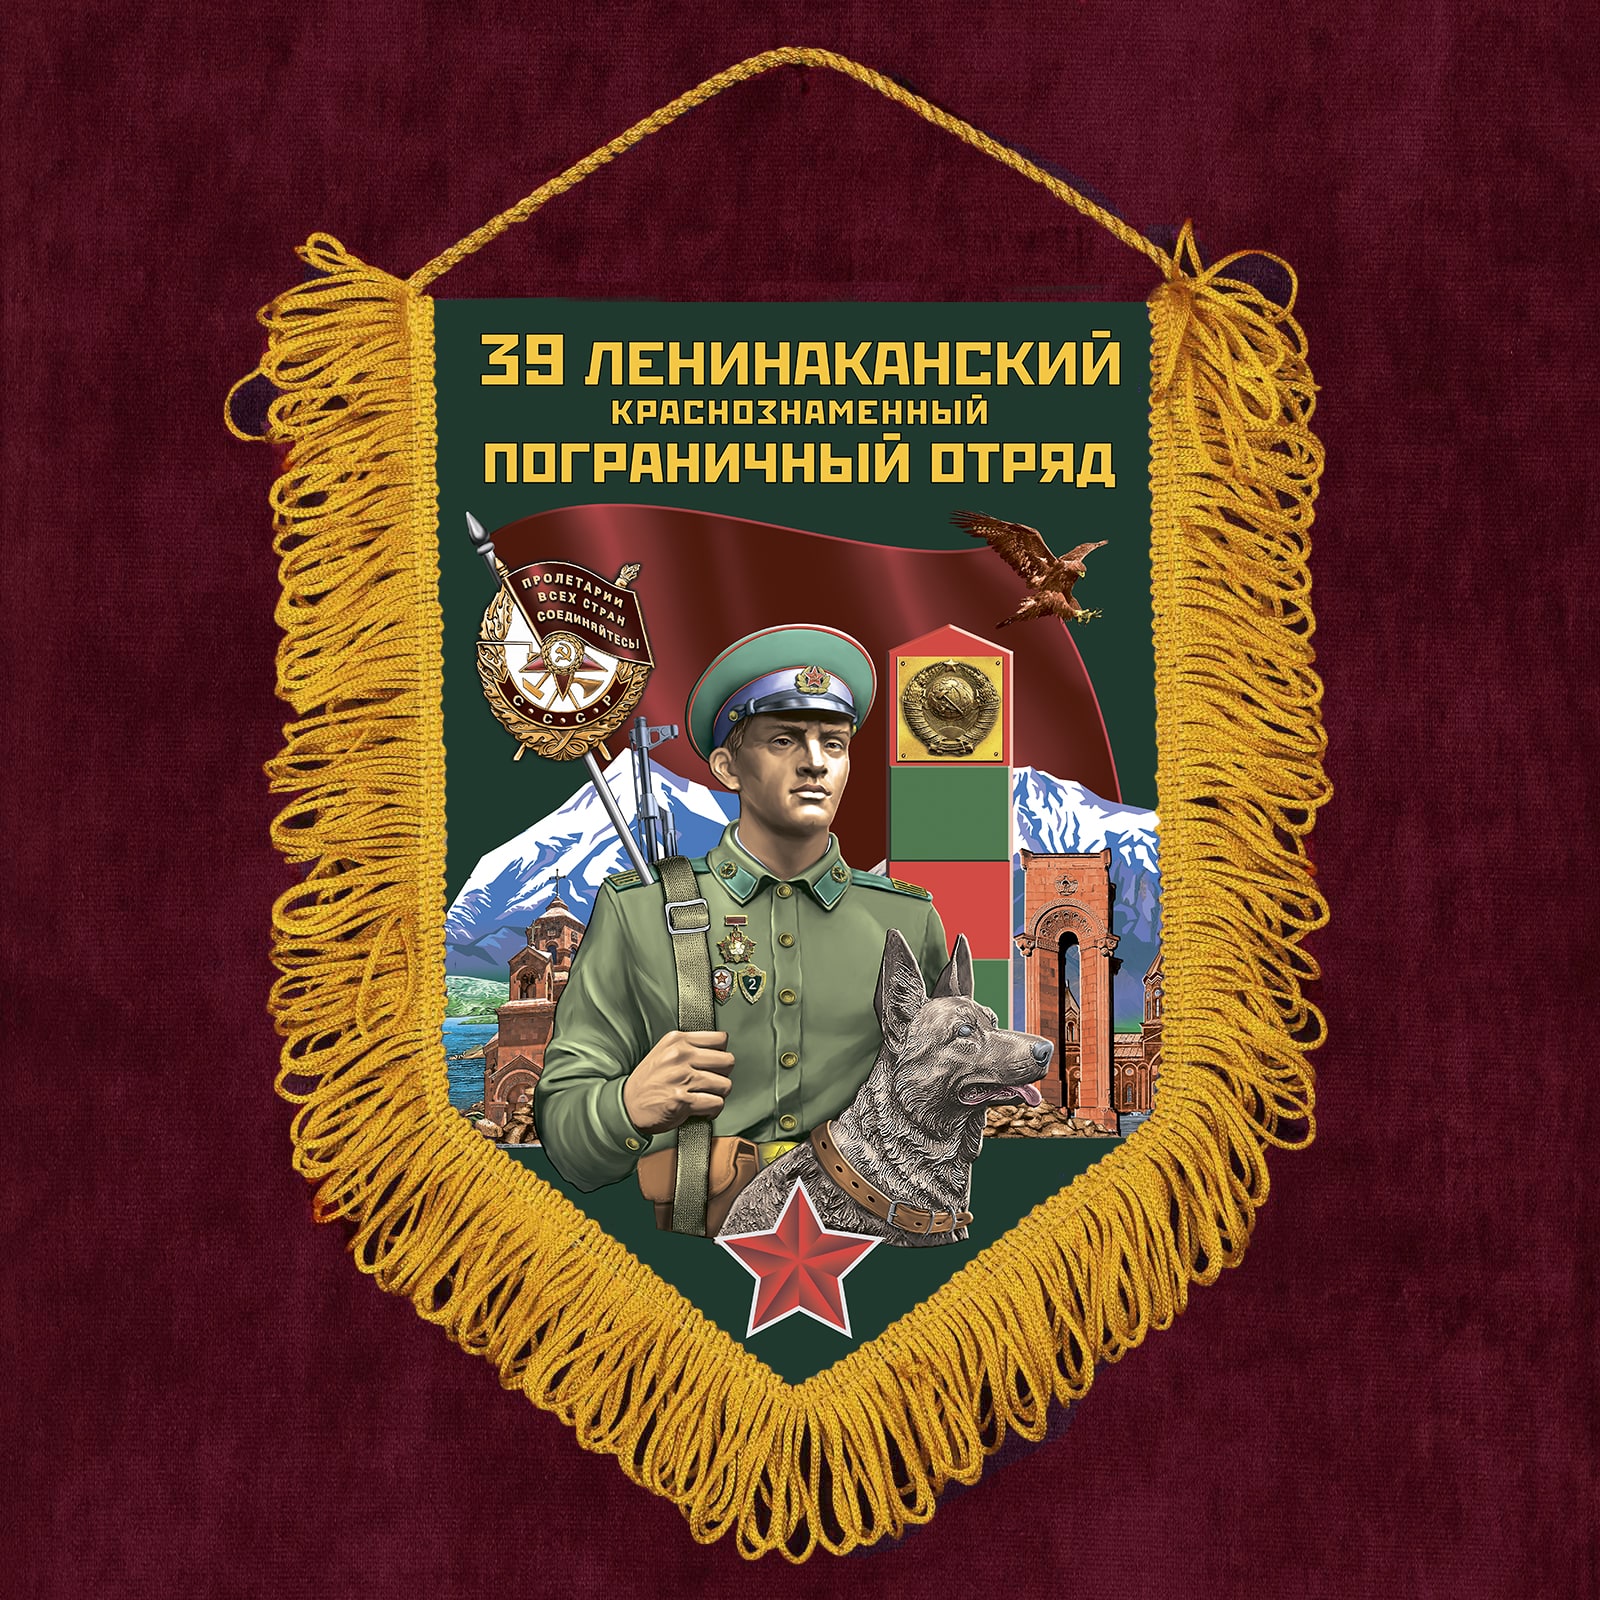 Подарочный вымпел "39 Ленинаканский пограничный отряд"